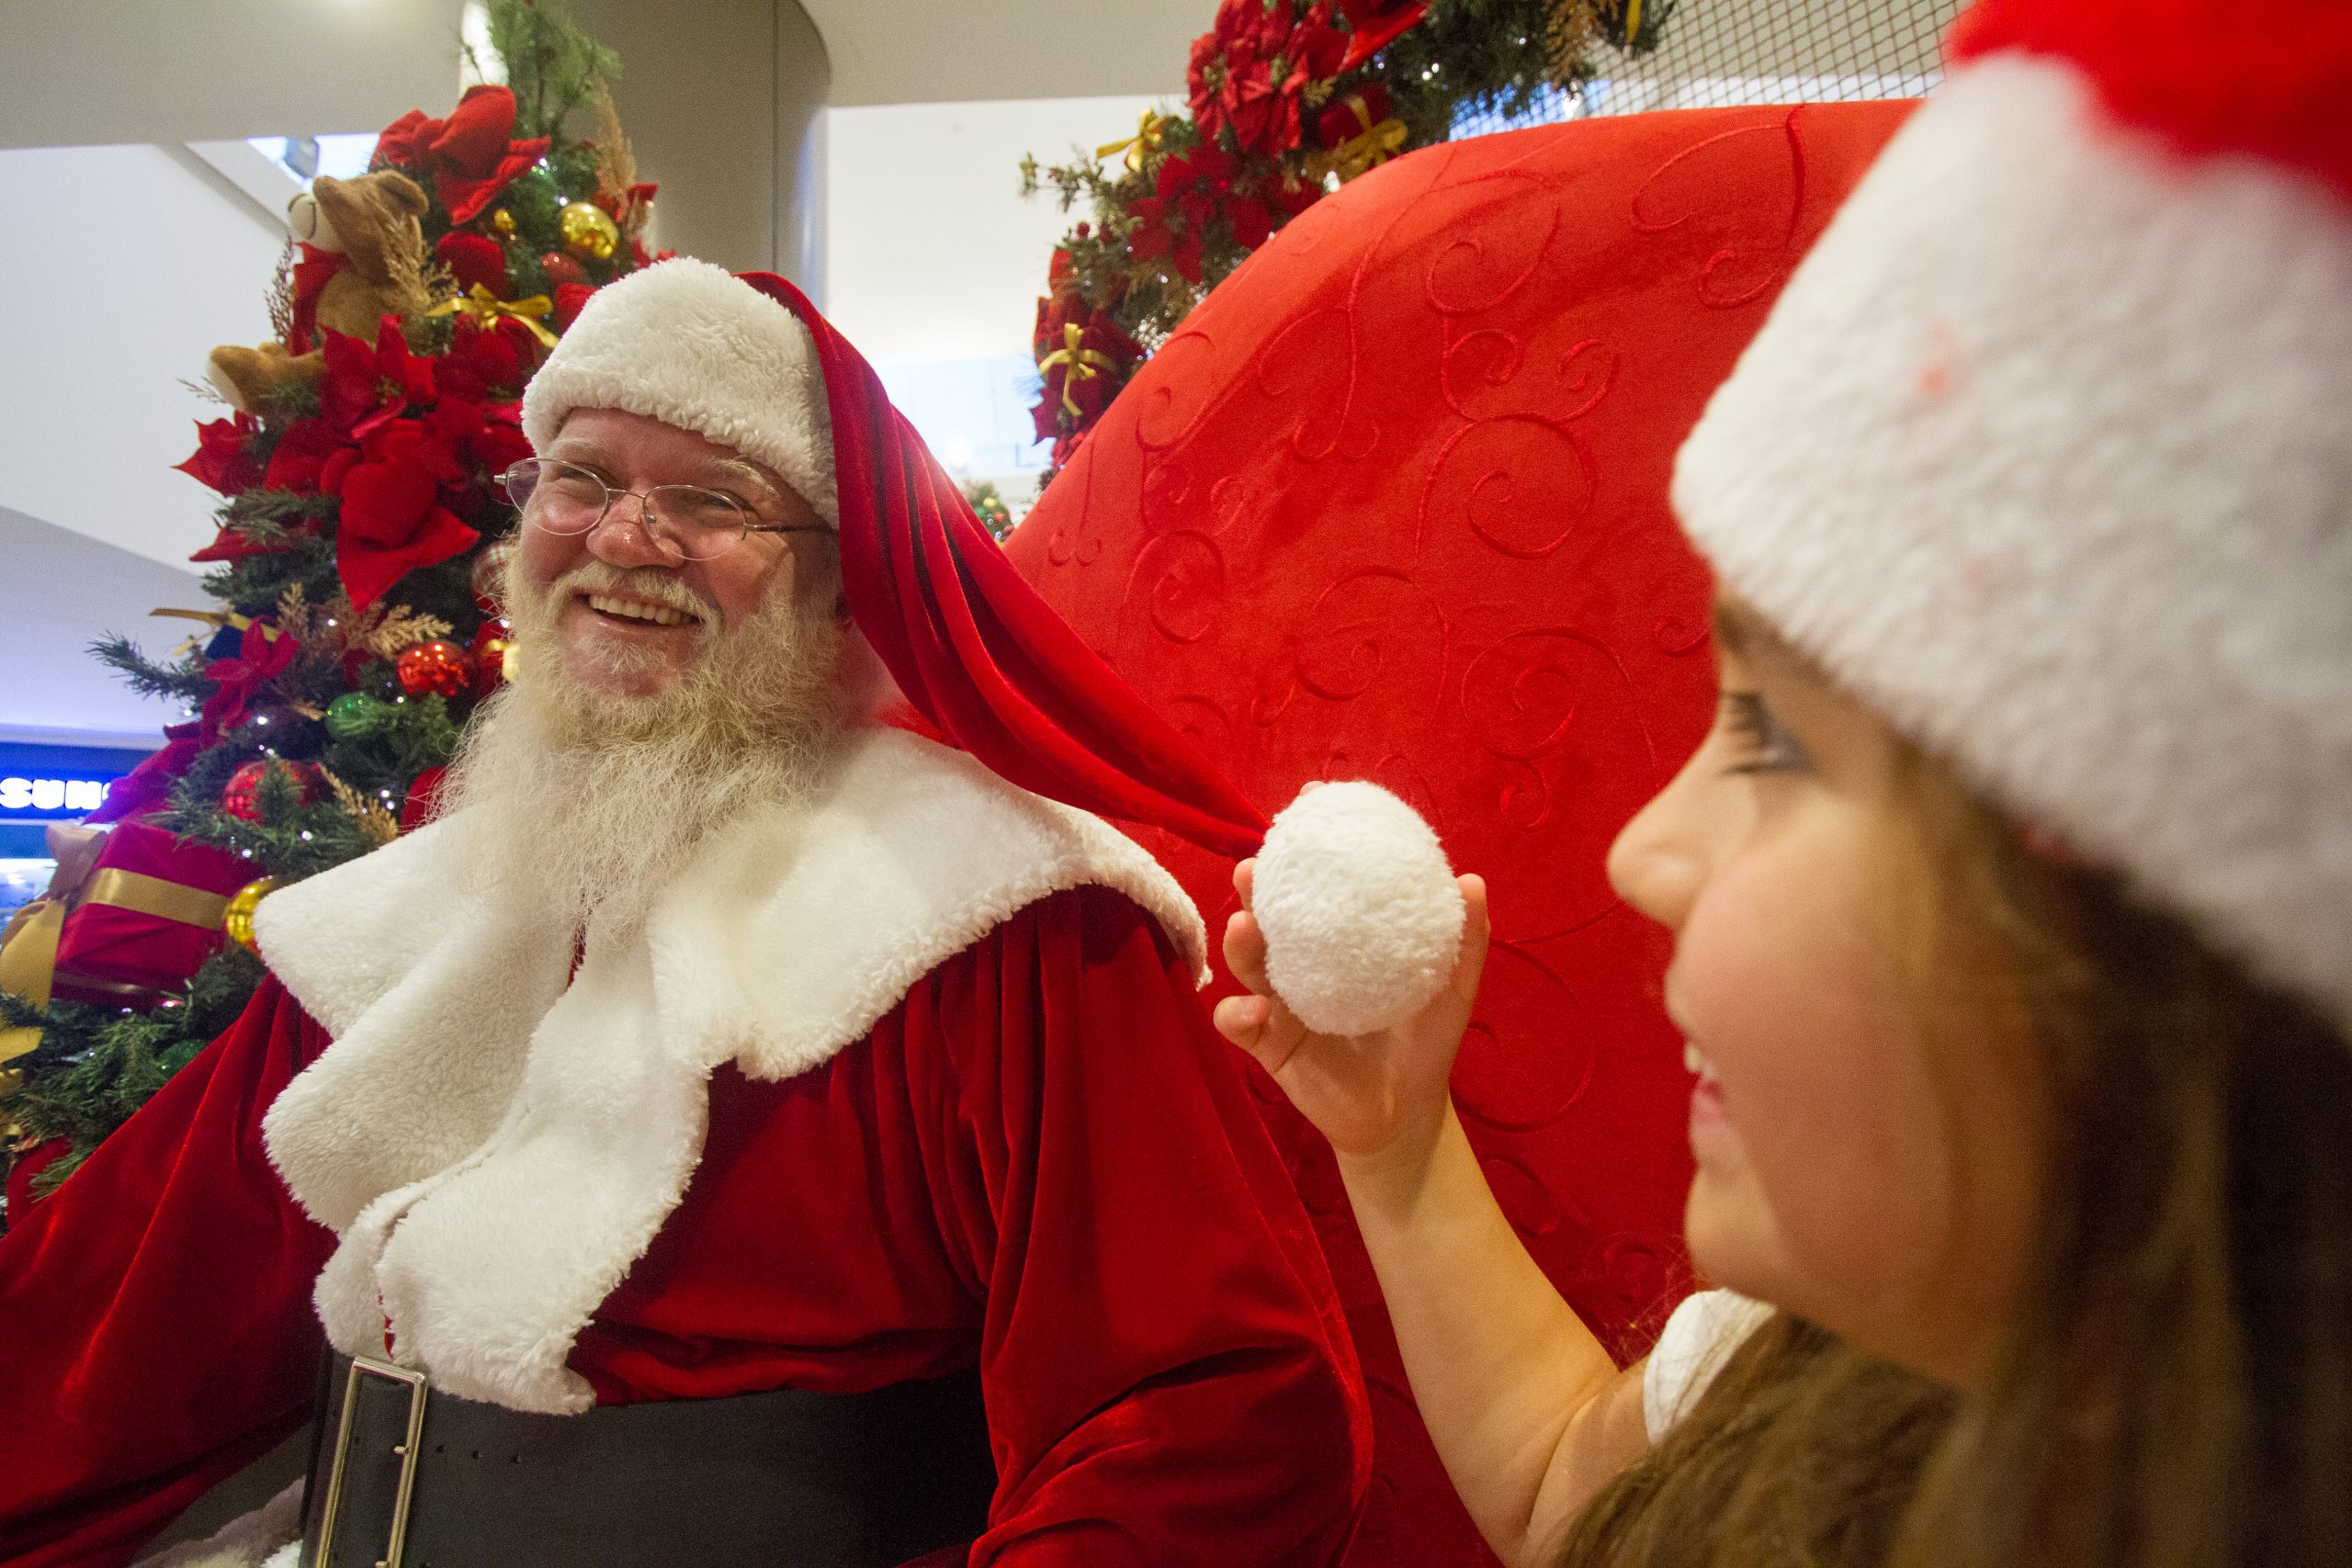 Afinal, o que o Papai Noel quer ganhar neste Natal? | ND Mais